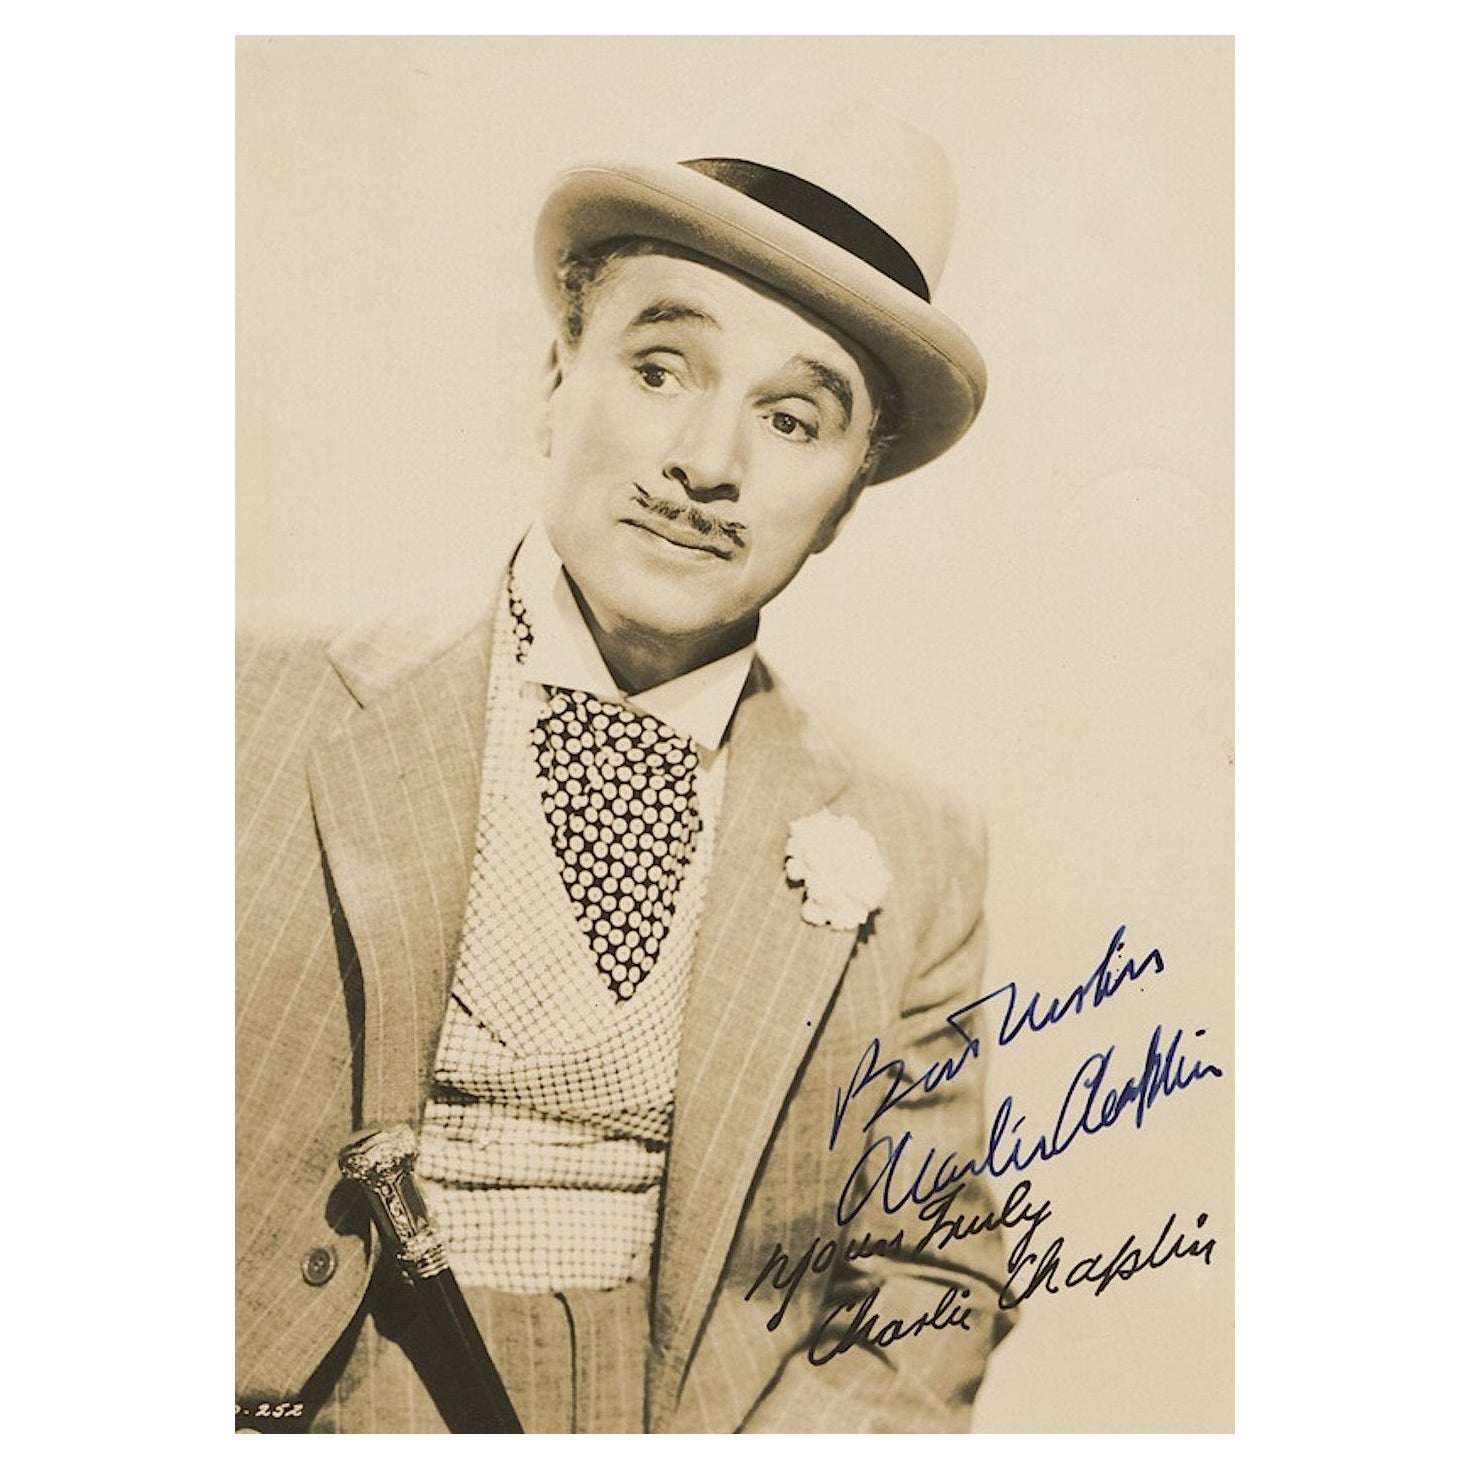 Charlie Chaplin Signed Photograph as Monsieur Verdoux